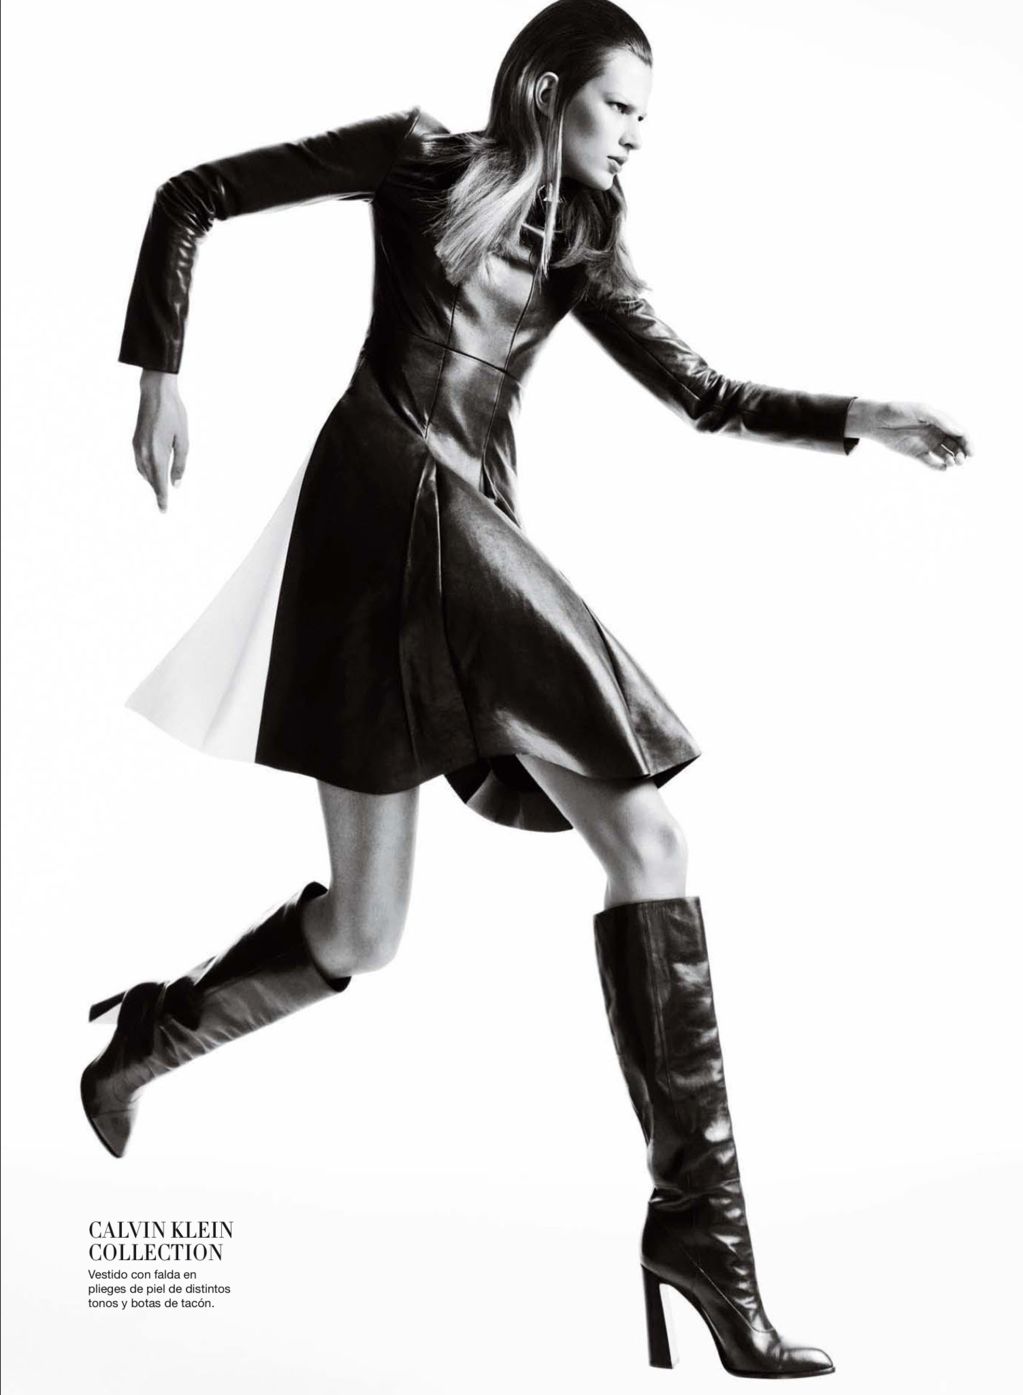 Bette Franke Goes to the Dark Side for Harper's Bazaar Spain October 2012